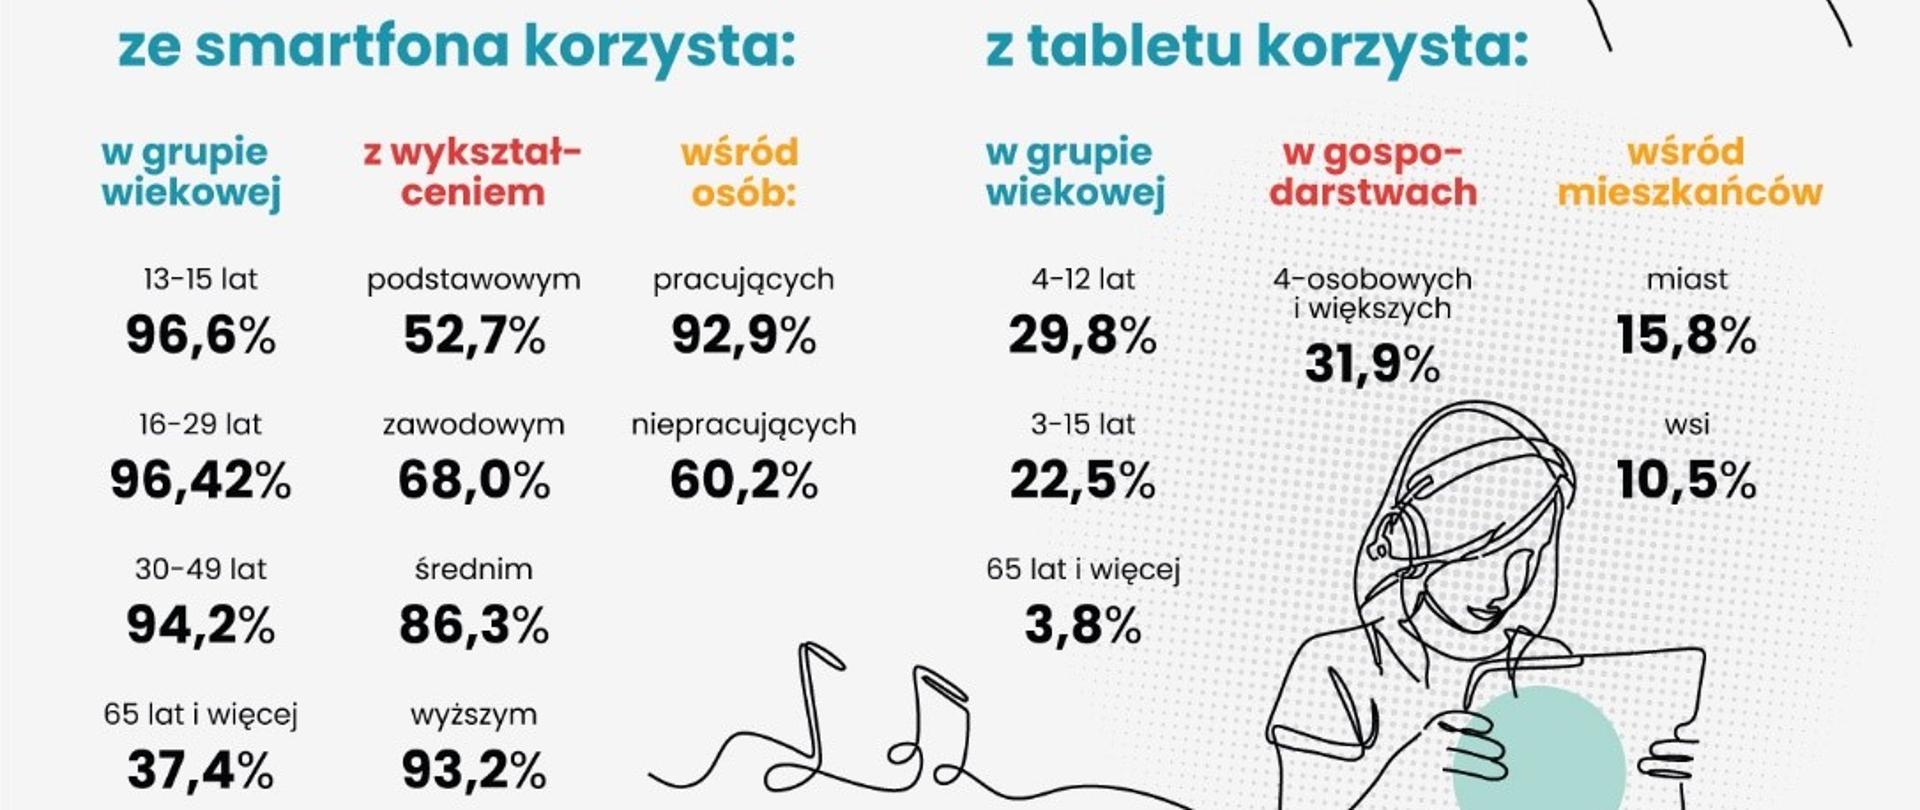 Użytkowanie smartfonów w Polsce - grafika